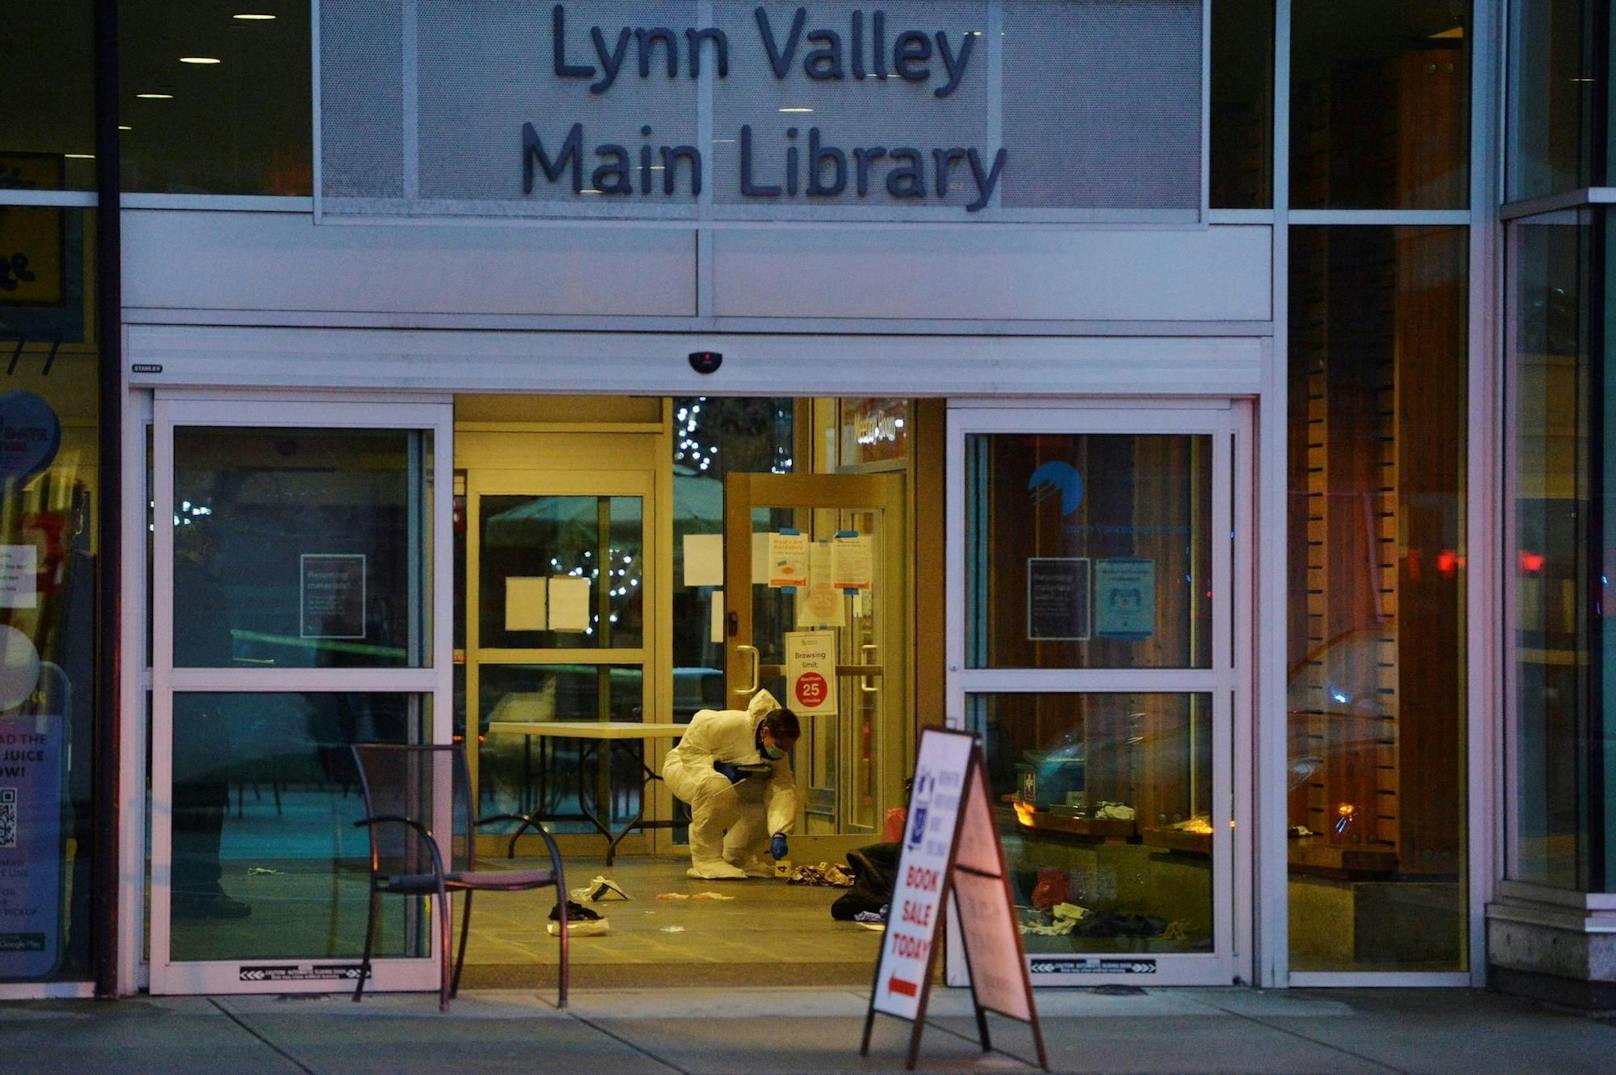 Hier kam es zum Messerangriff: die öffentliche Bibliothek im Stadtteil Lynn Valley im Norden von Vancouver.